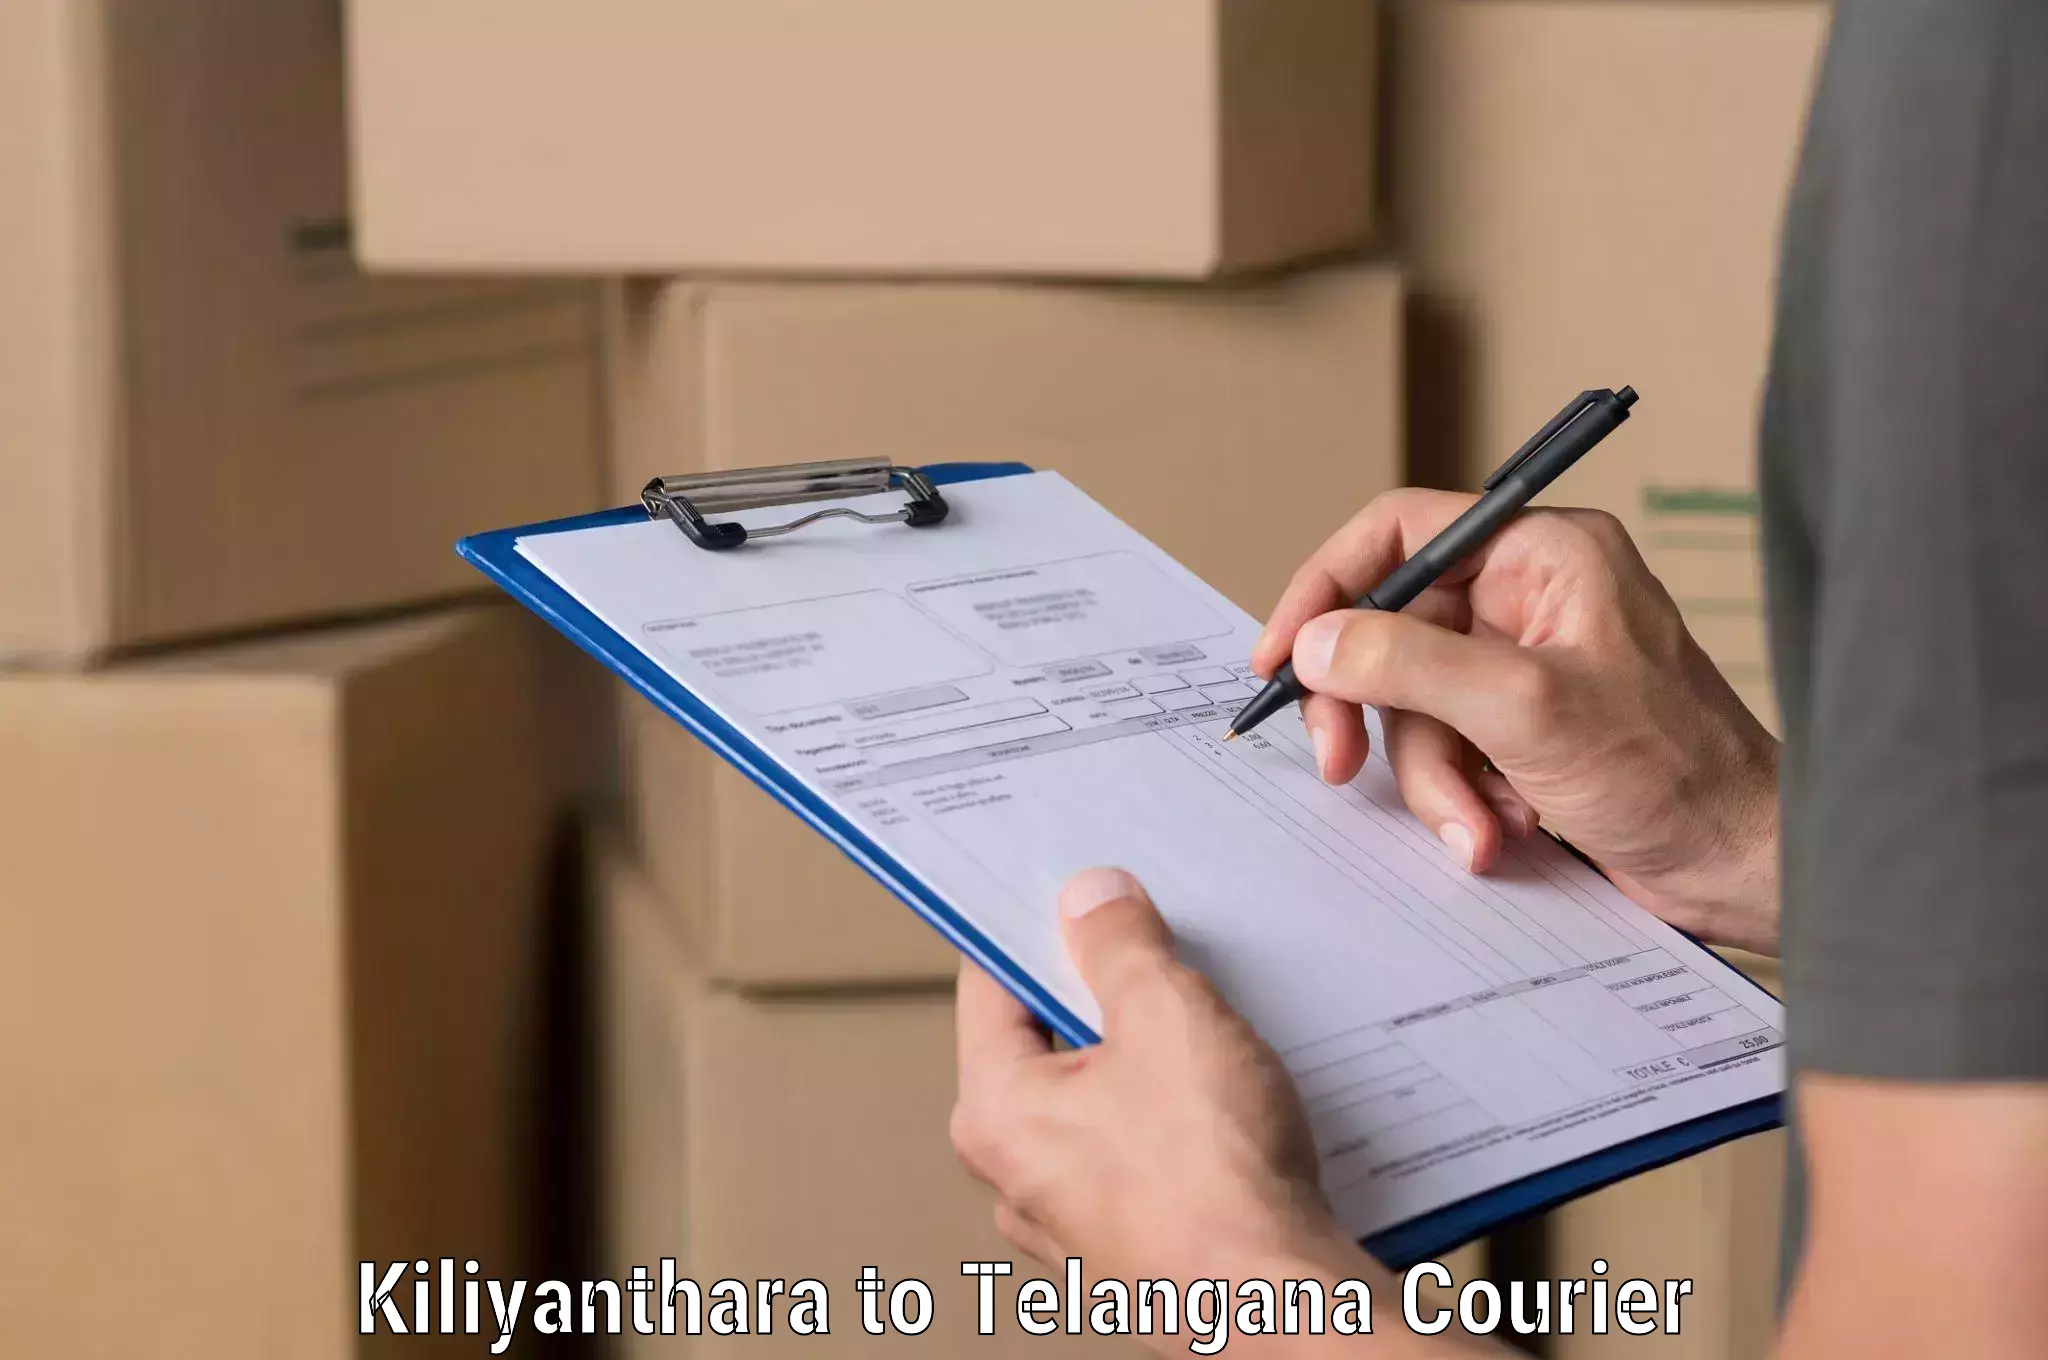 Comprehensive shipping network Kiliyanthara to Kadthal